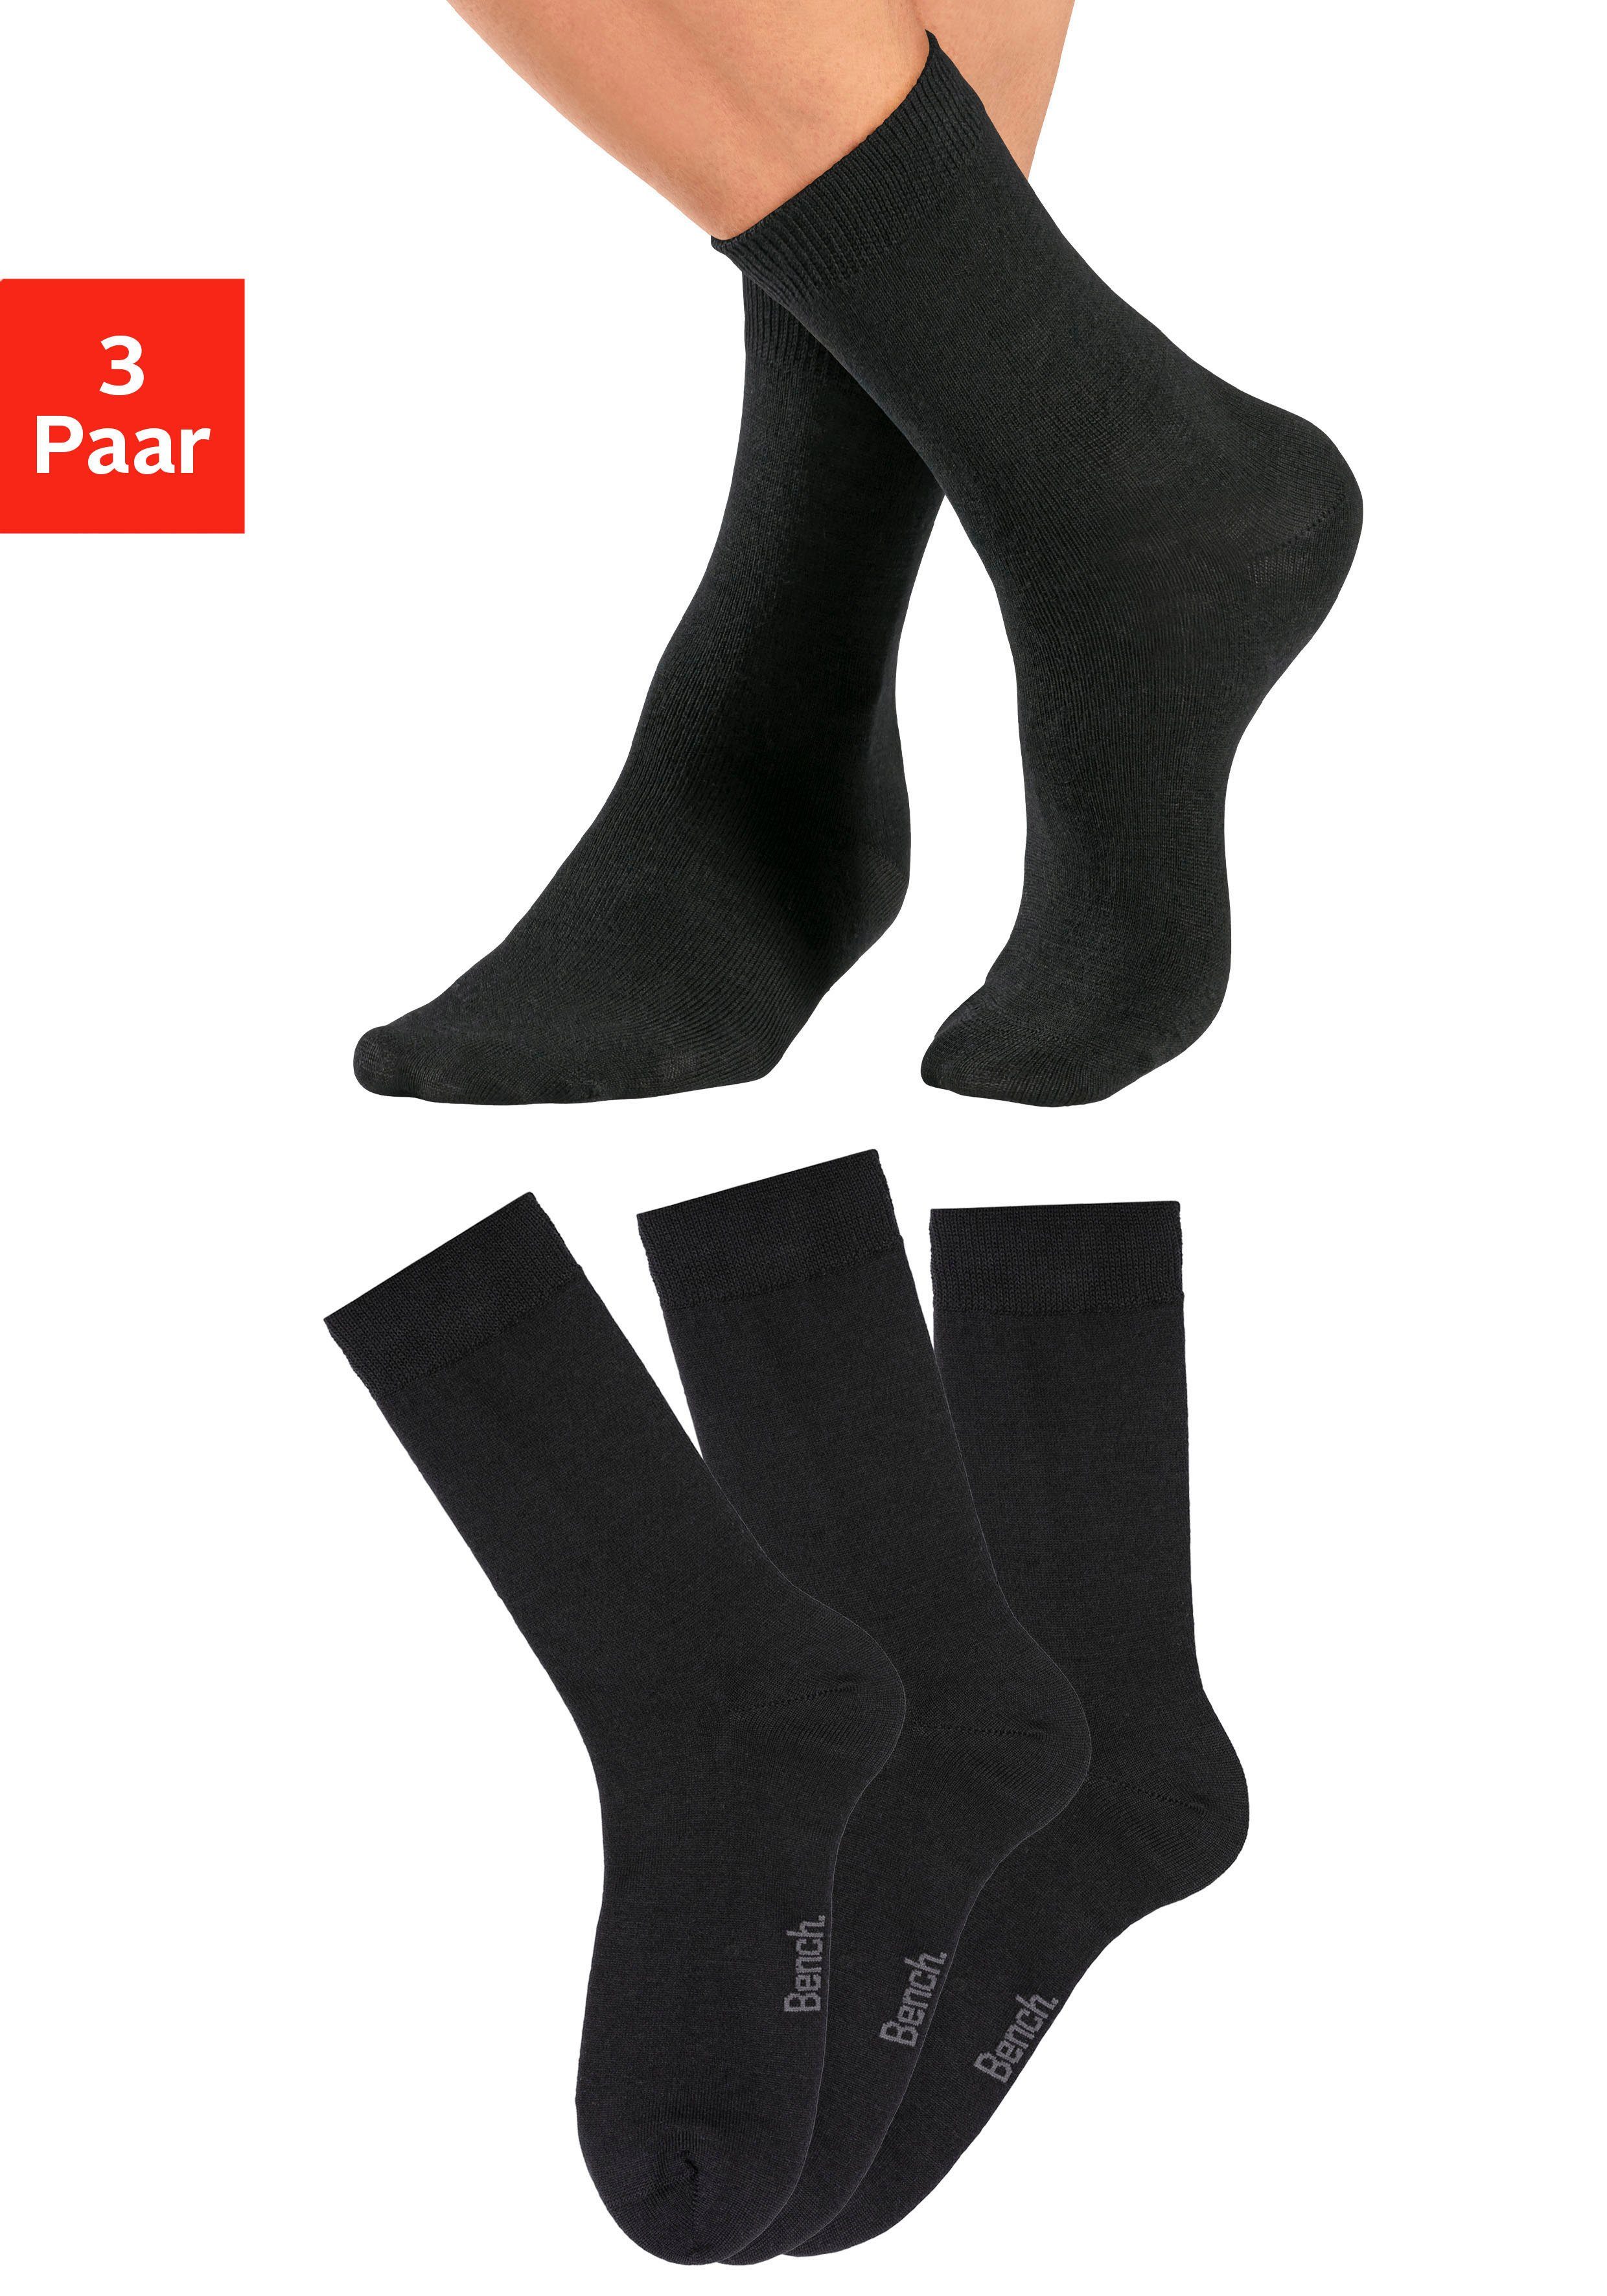 Bench. Socken (3-Paar) Wollsocken aus flauschigem Material 3x schwarz